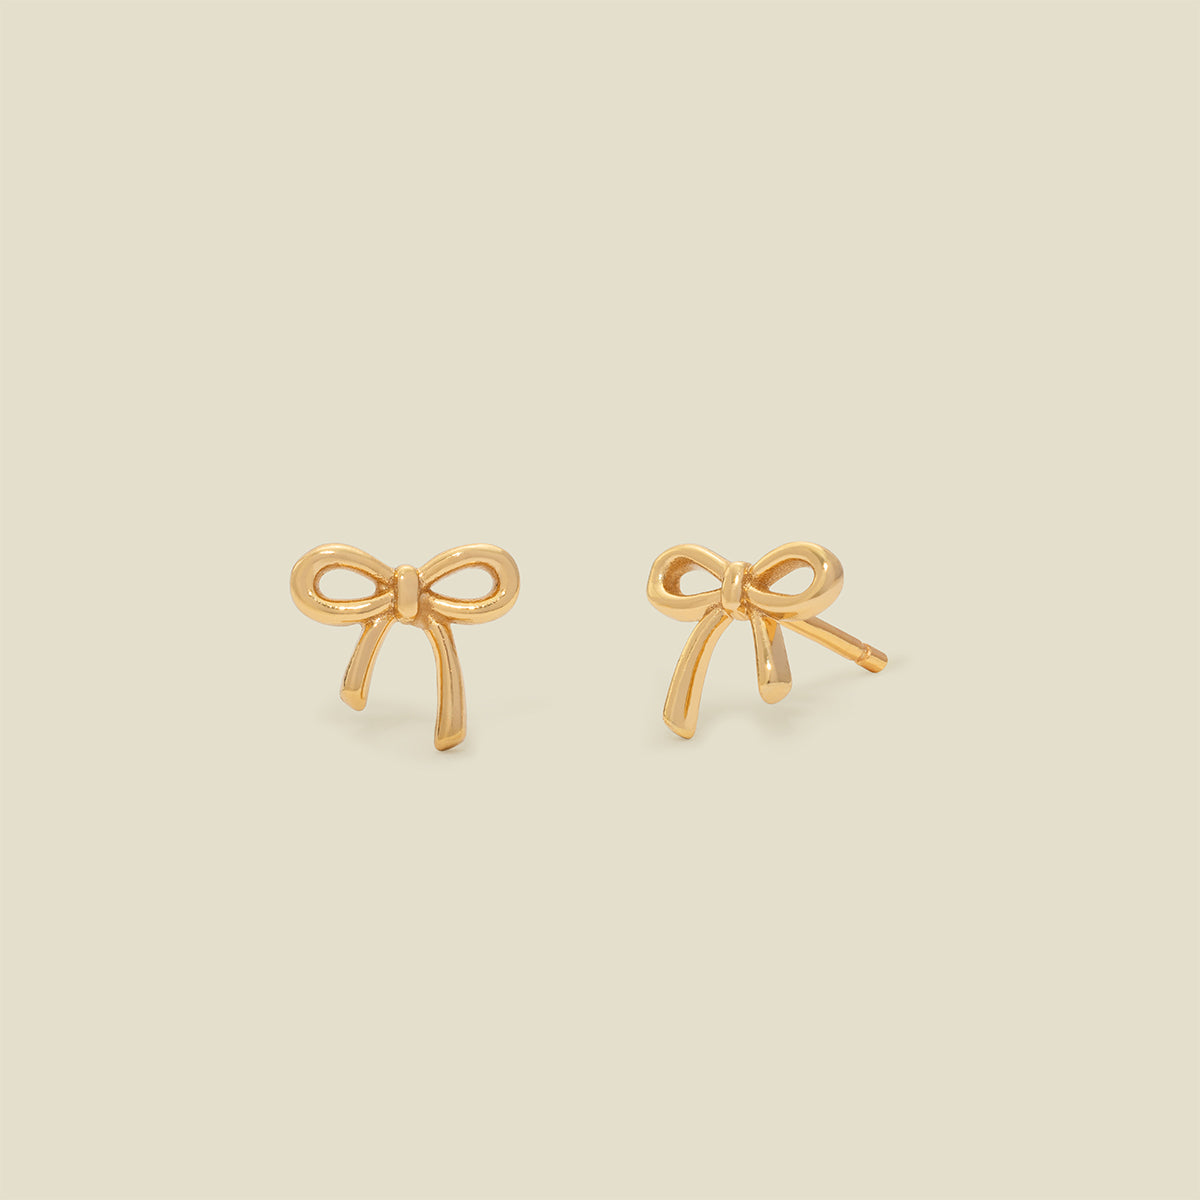 Bow Stud Earrings Gold Vermeil Earring